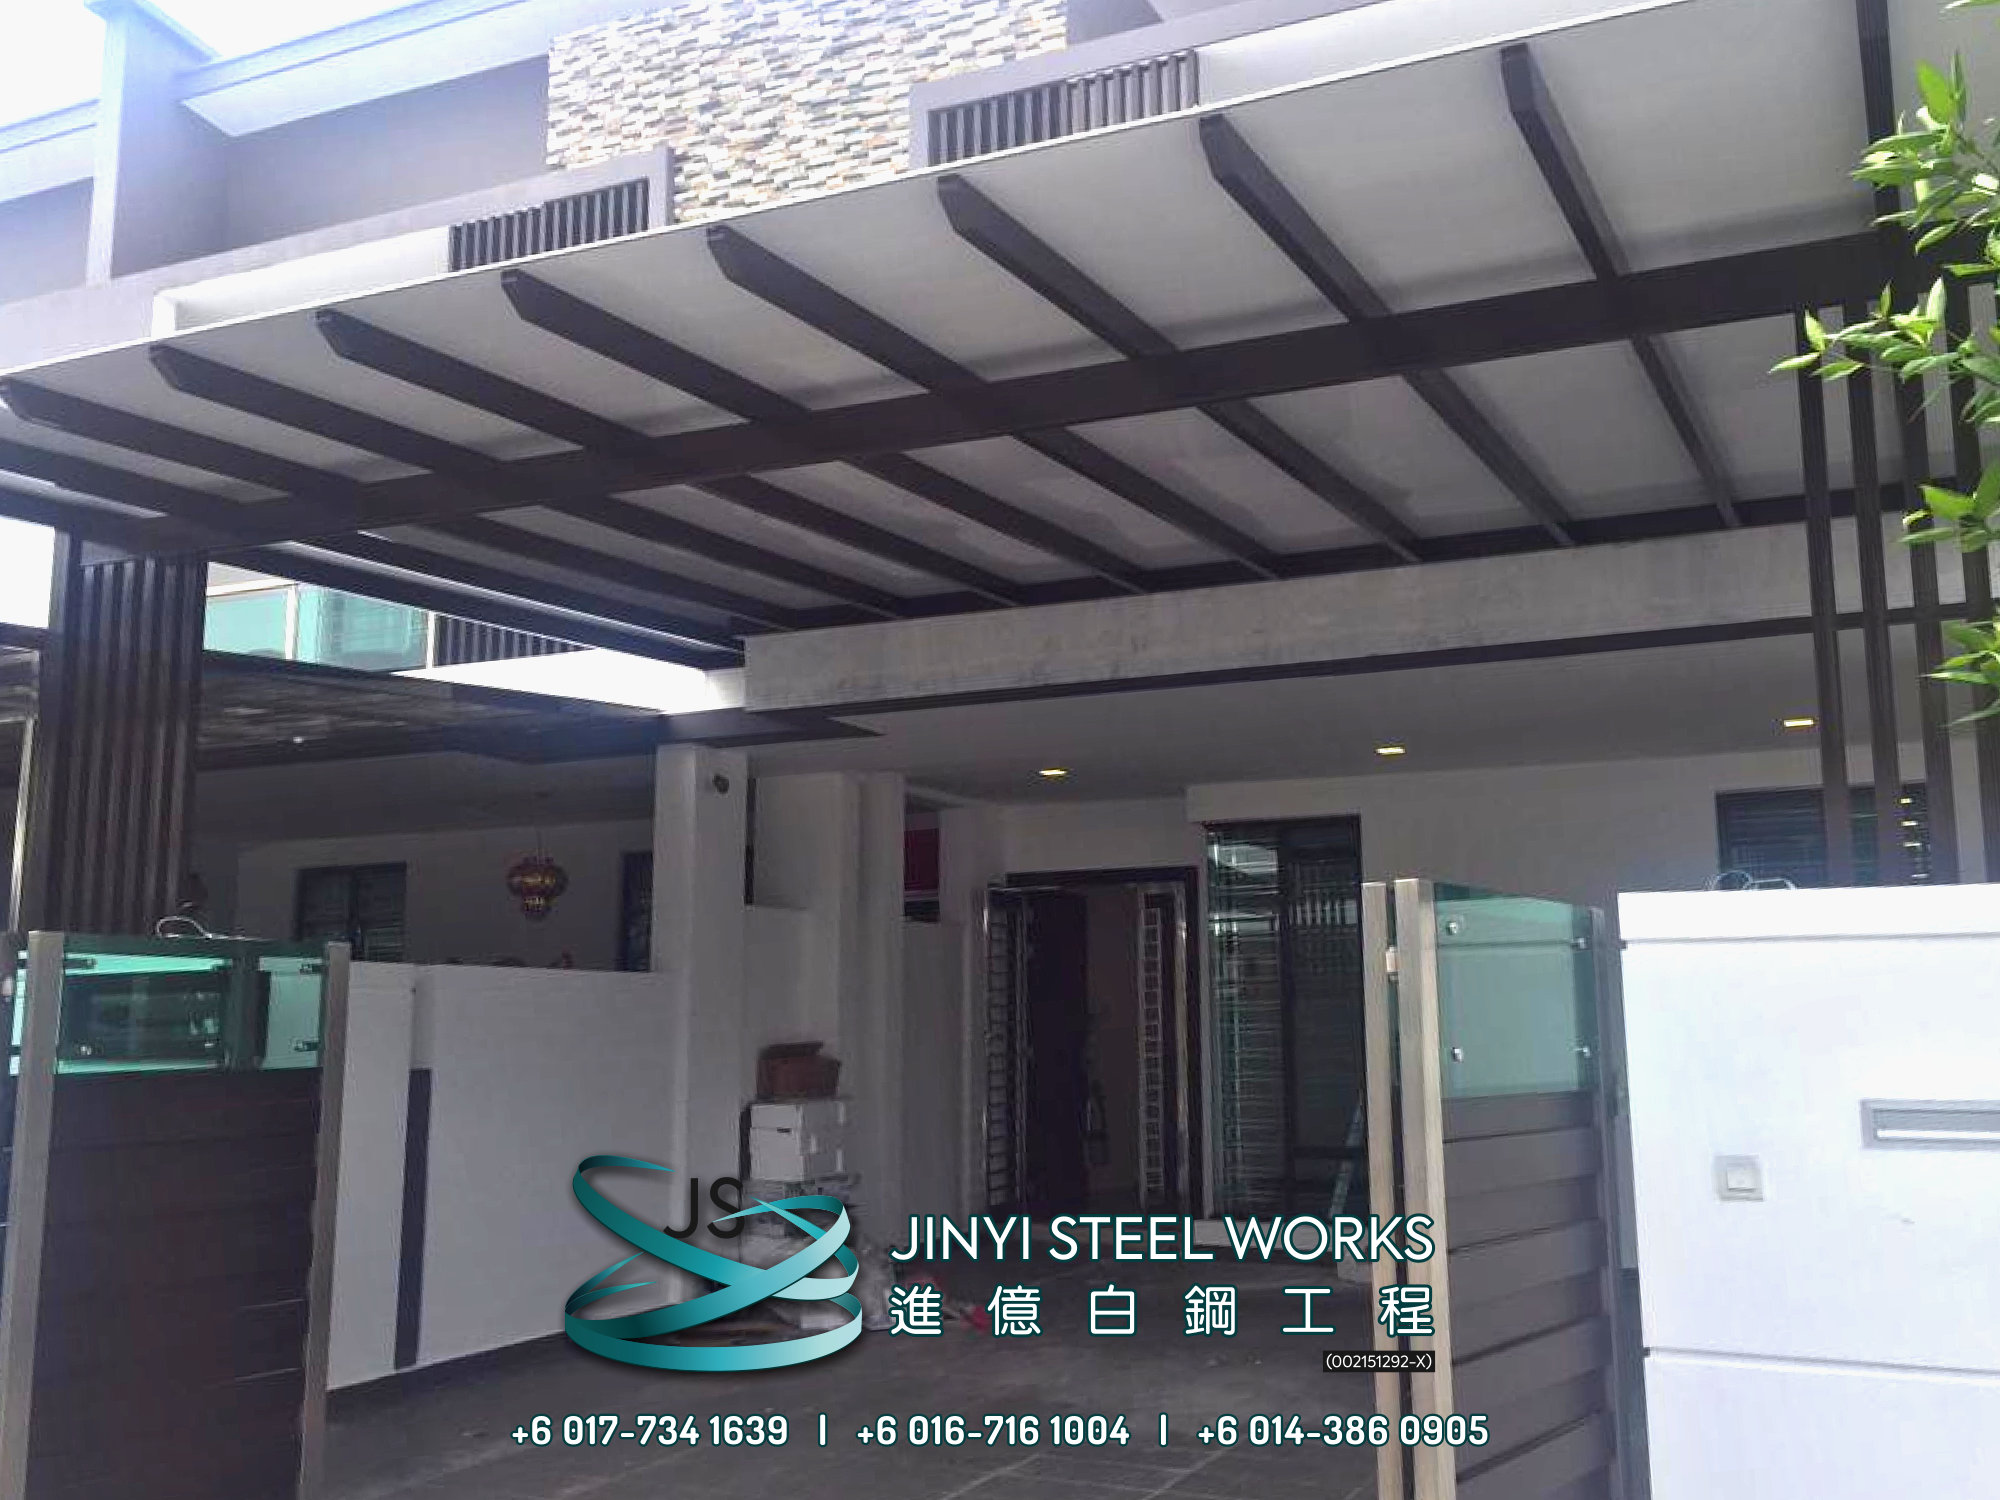 Jinyi Steel Works Pengilang Produk Besi dan Keluli Tahan Karat Menyesuaikan dan Memasangnya Untuk Anda Johor Melaka Negeri Sembilan Kuala Lumpur Selangor Pahang Batu Pahat Stainless Steel B05